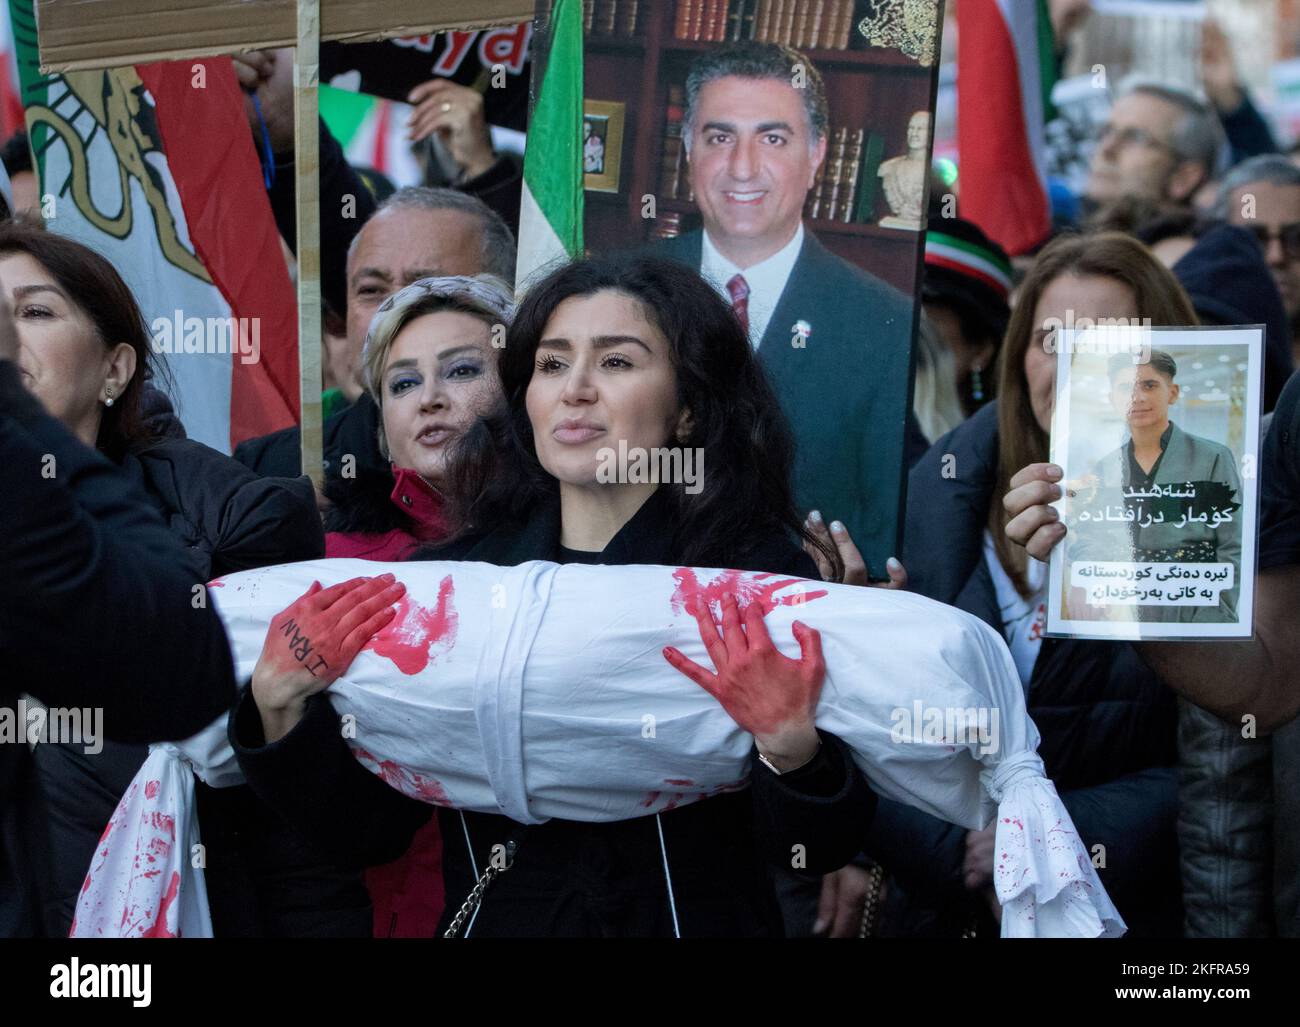 Westminster, Londra, Regno Unito. 19th Nov 2022. Gli iraniani protestano a Londra in seguito alla morte di Mahsa Amini, 22 anni, in Iran, che è stato arrestato dopo che è stata presunta che abbia violato le severe leggi sulla moralità dei paesi. Coloro che protestano hanno invitato i governi del mondo a sanzionare più aspra il regime iraniano, guidato dal leader supremo Ayatollah Ali Khamenei. Coloro che protestano sostengono coloro che in Iran chiedono la caduta degli Ayatollah e delle brutali autorità moraliste nella Repubblica islamica dell'Iran. Foto Stock